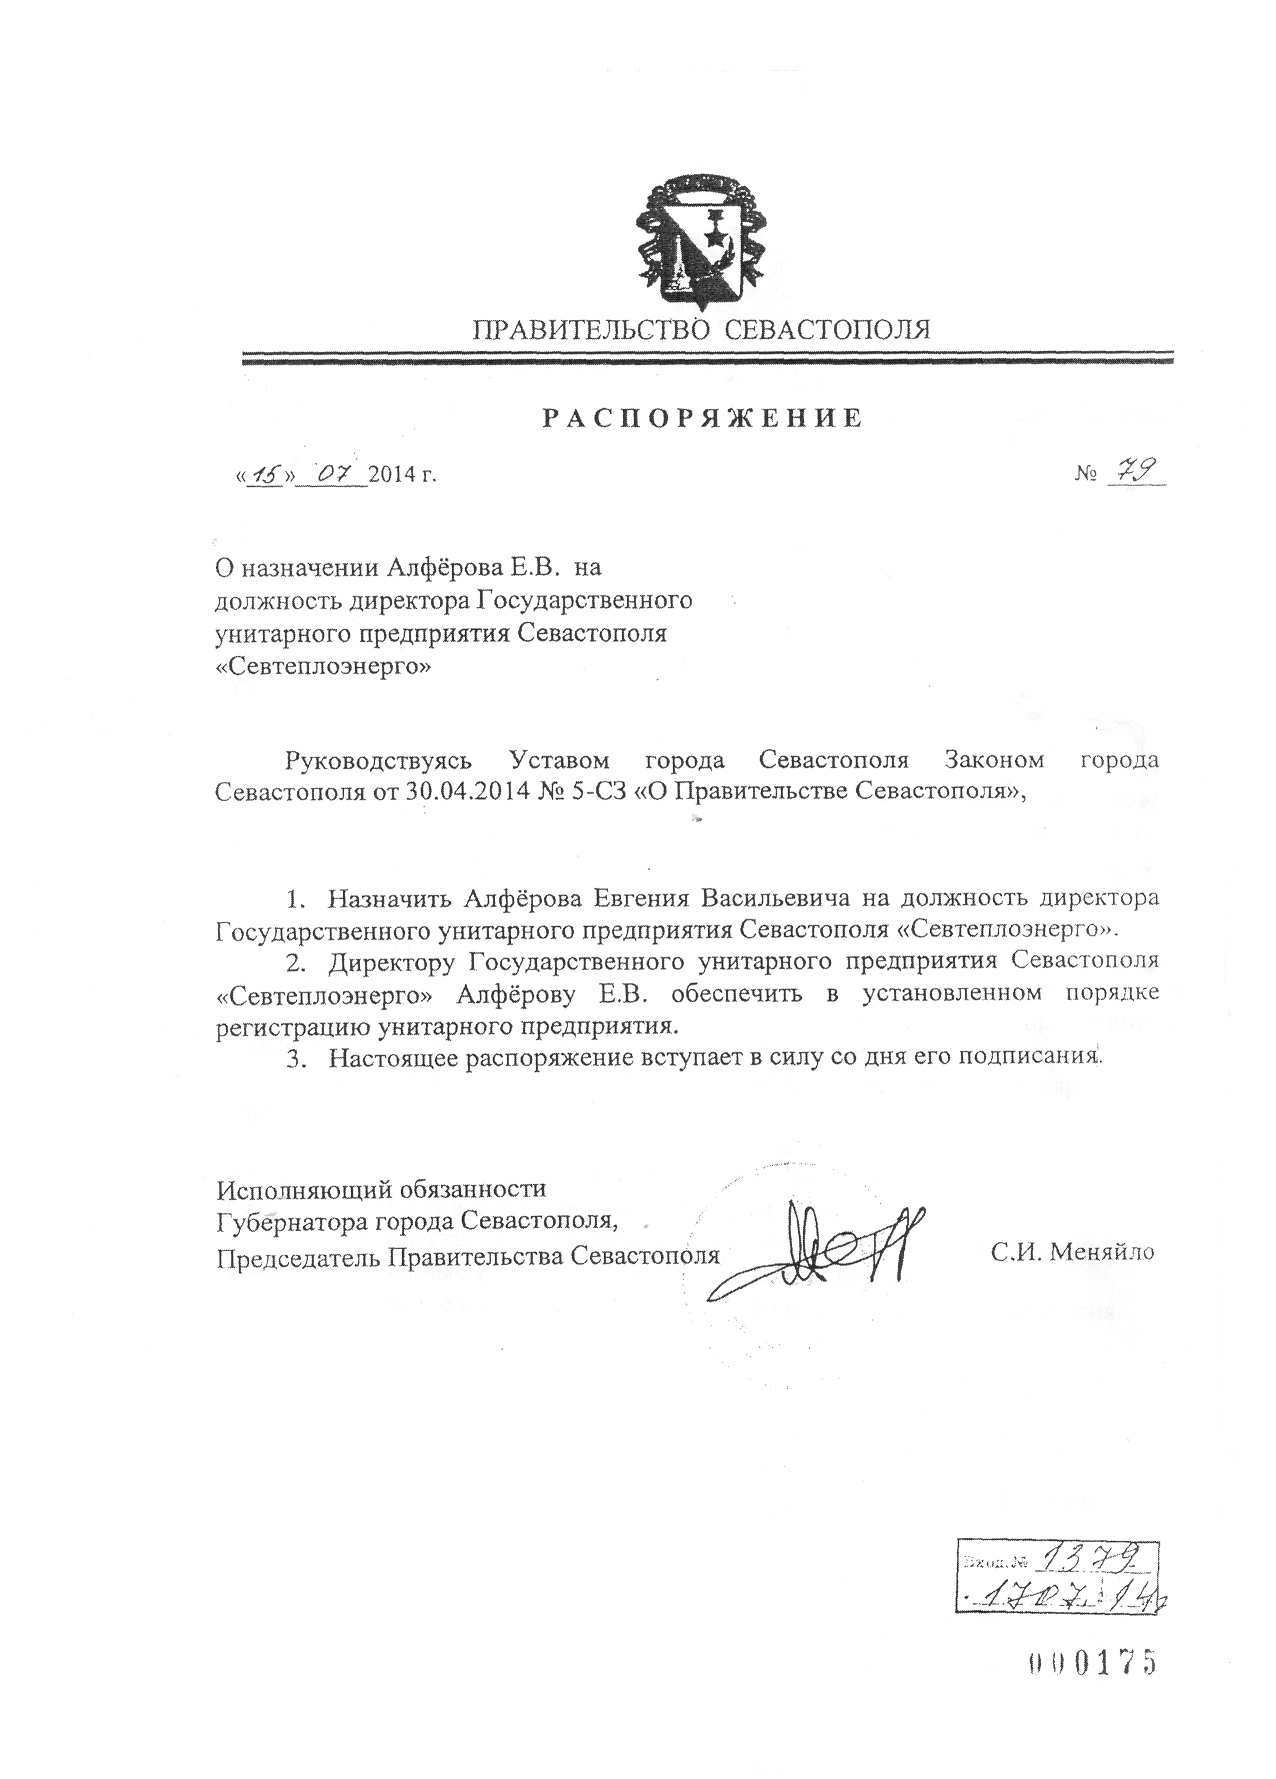 Распоряжение Правительства Севастополя от 15.07.2014 г. № 79